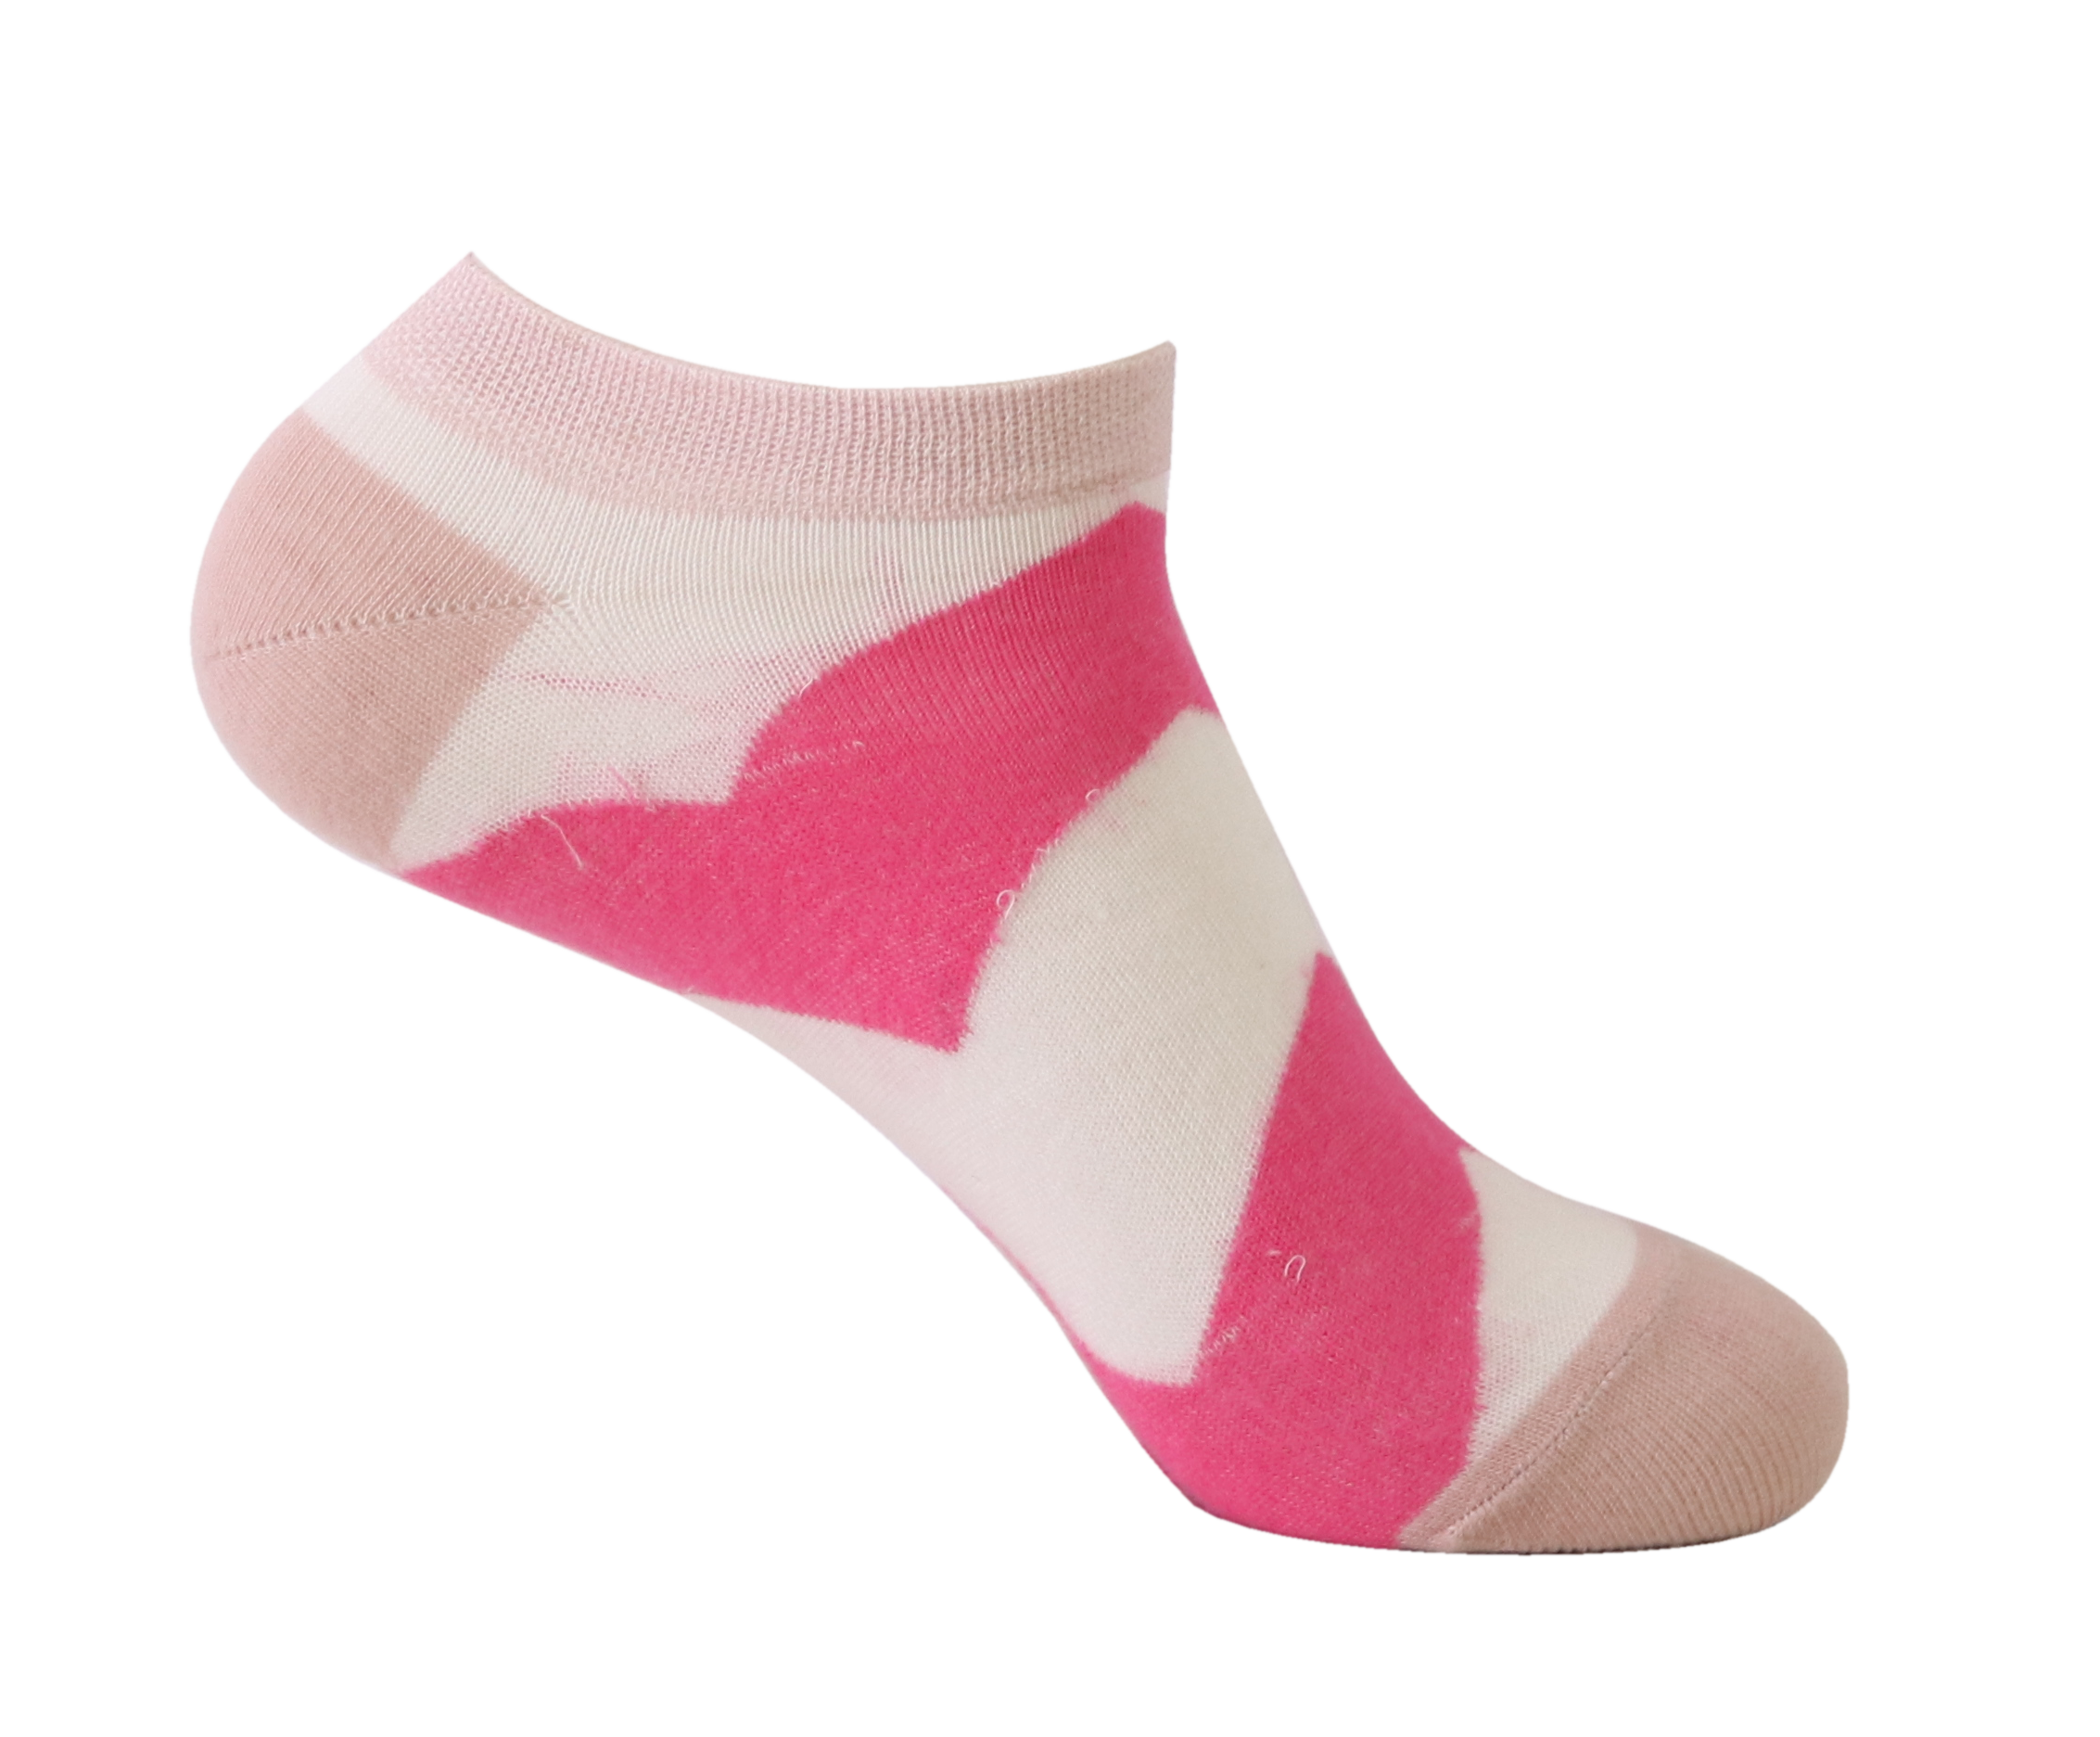 Viva Lowcut Socks for women's